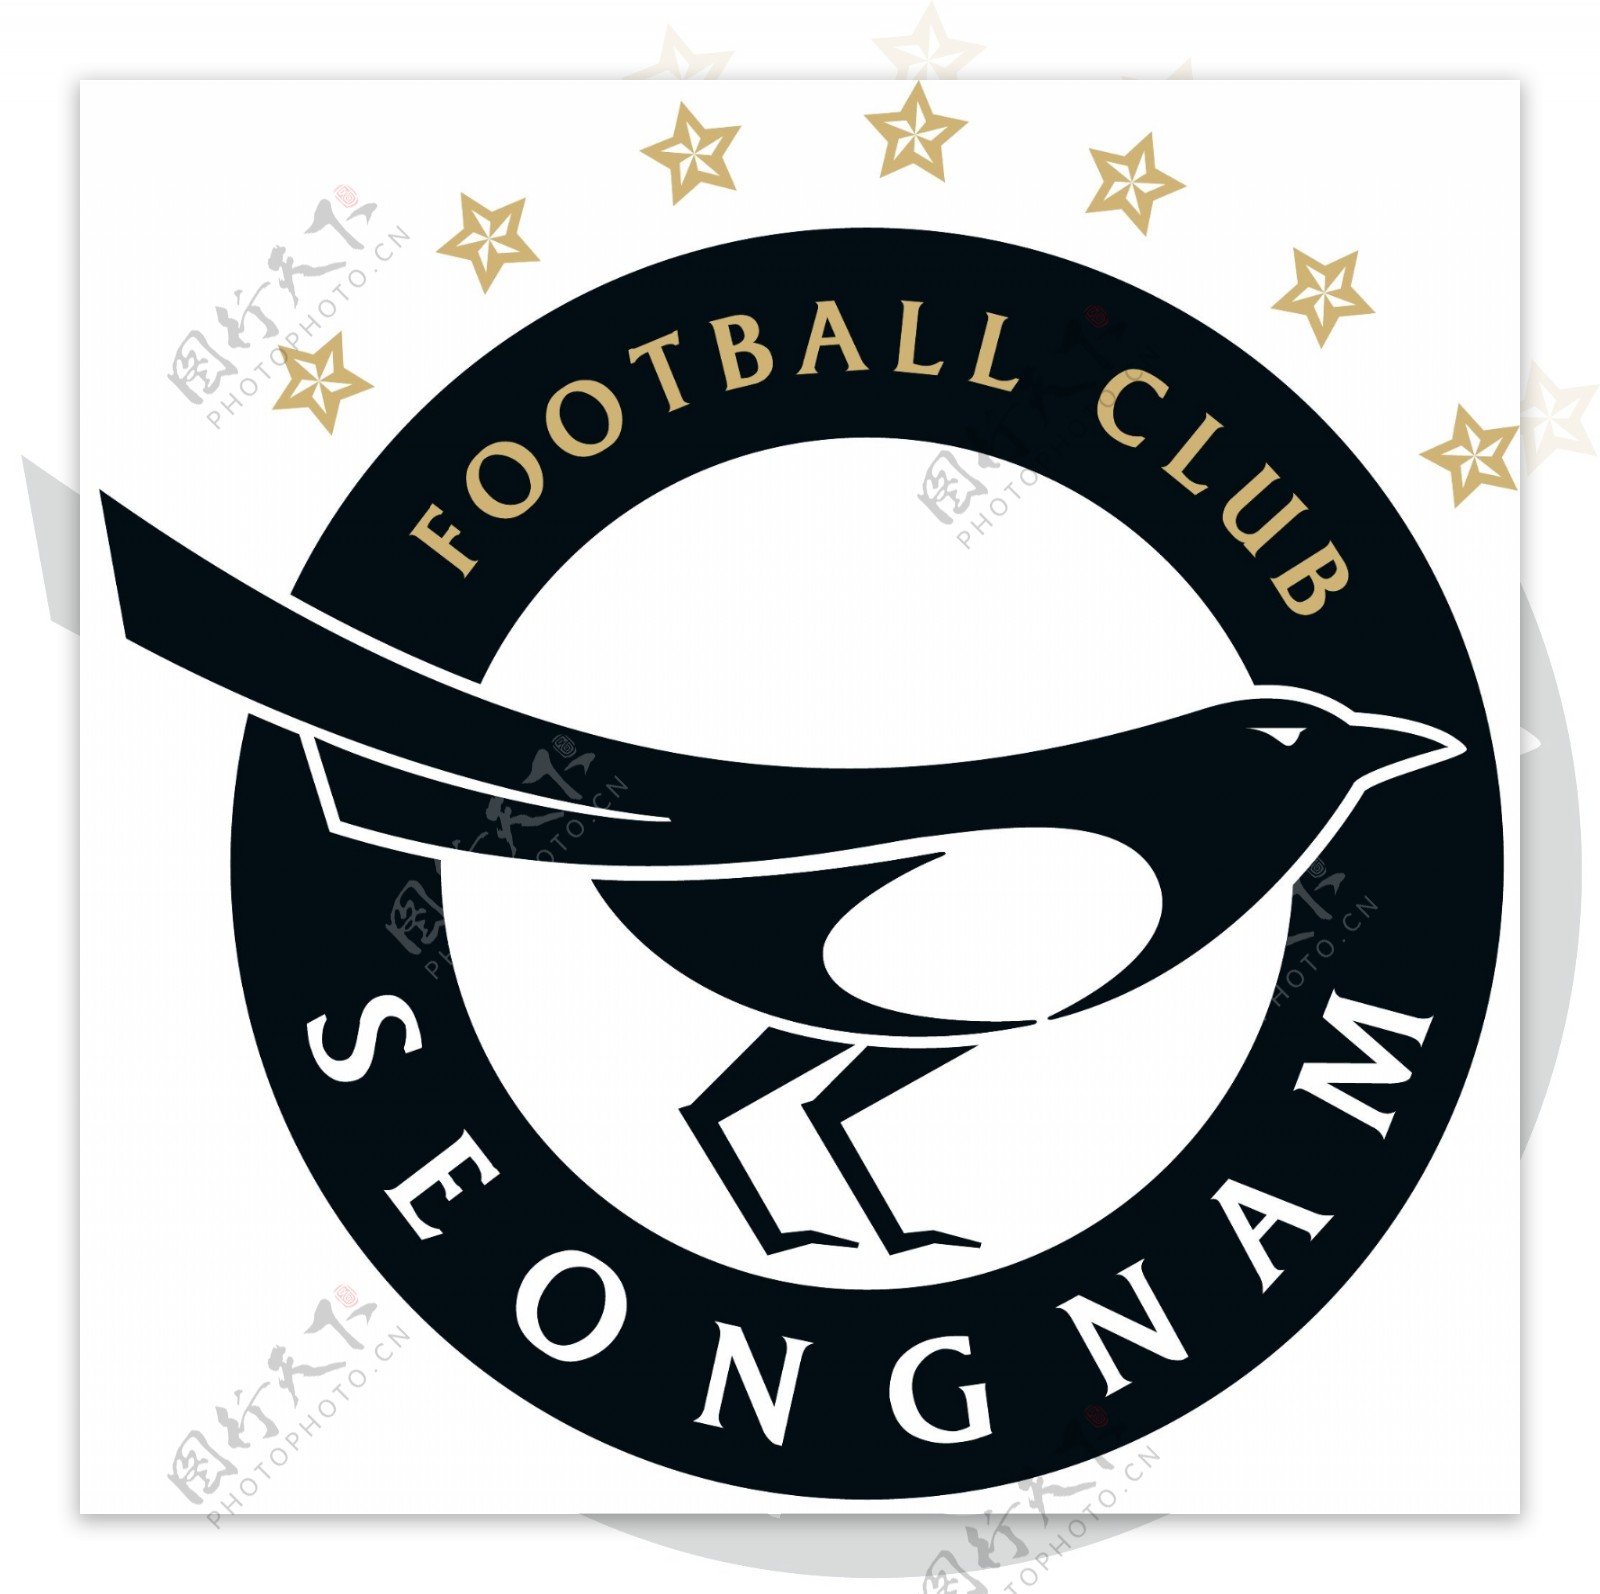 城南足球俱乐部徽标图片